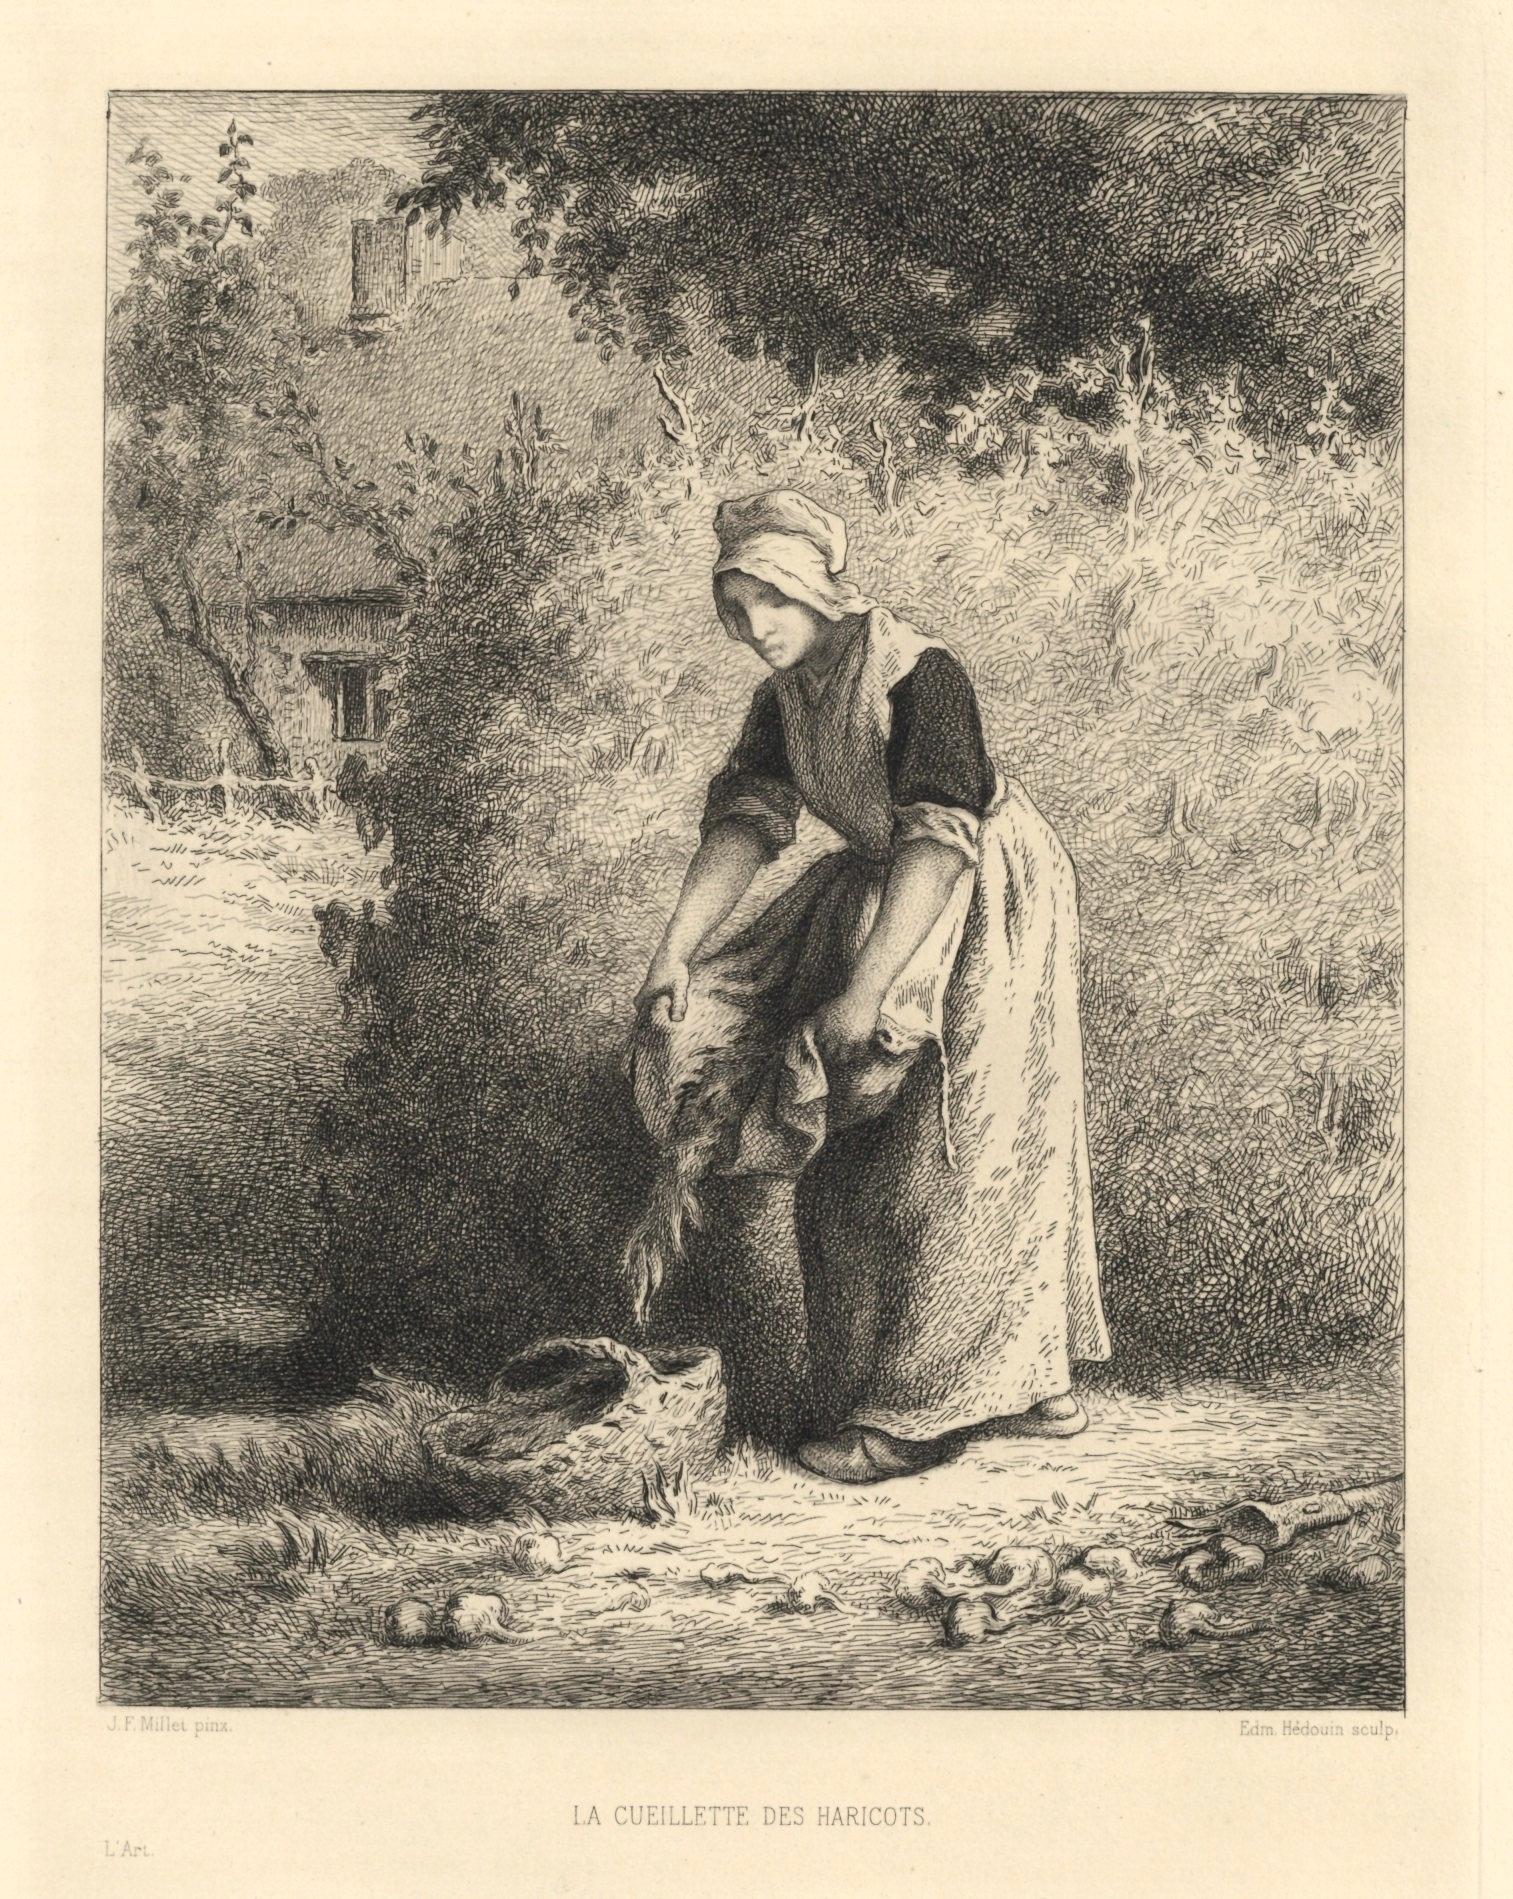 "La cueillette des haricots" etching - Print by (after) Jean François Millet